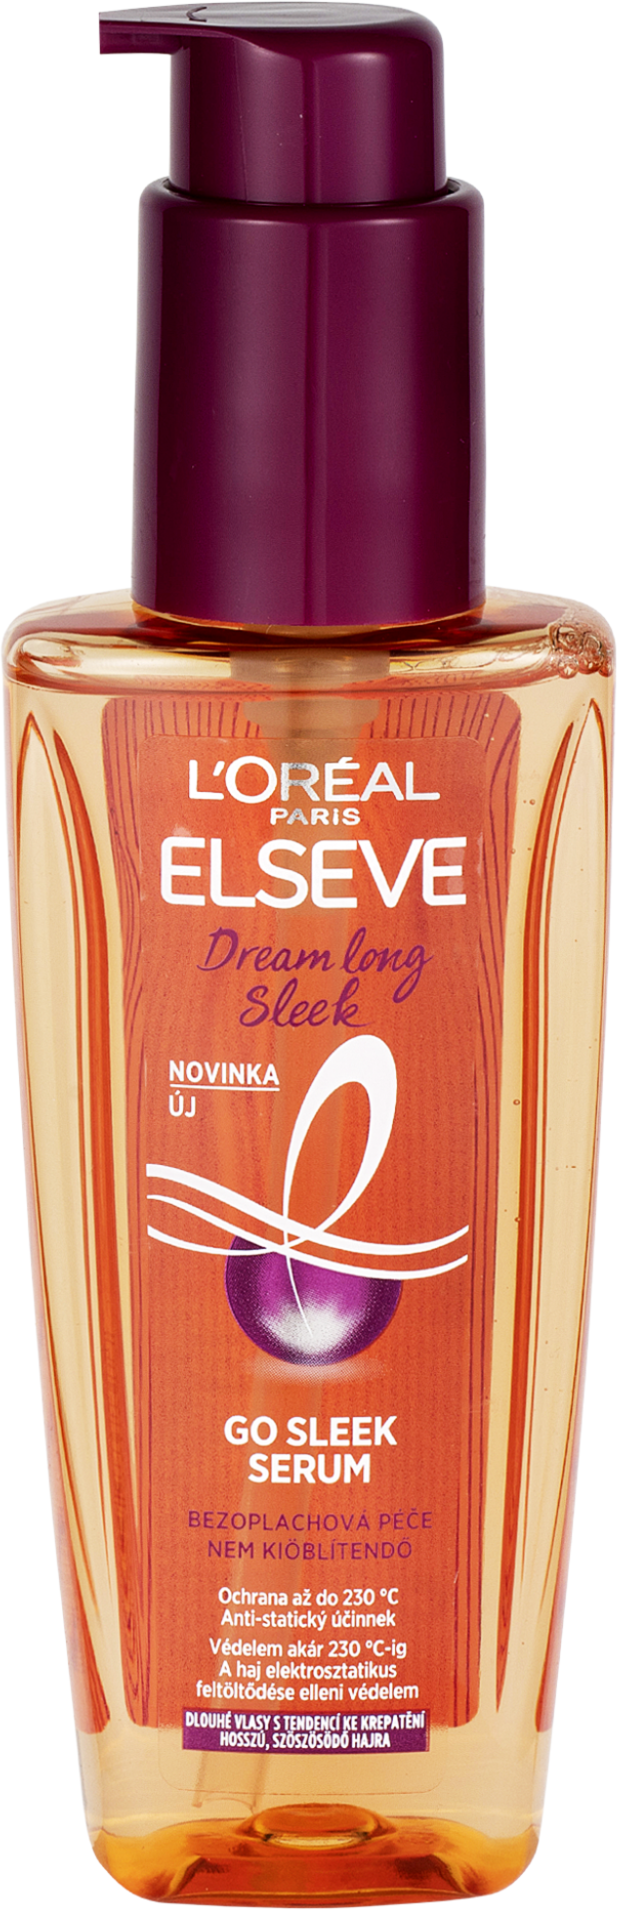 L'Oréal Paris Dream Long Go Sleek Serum Bezoplachová péče 100 ml